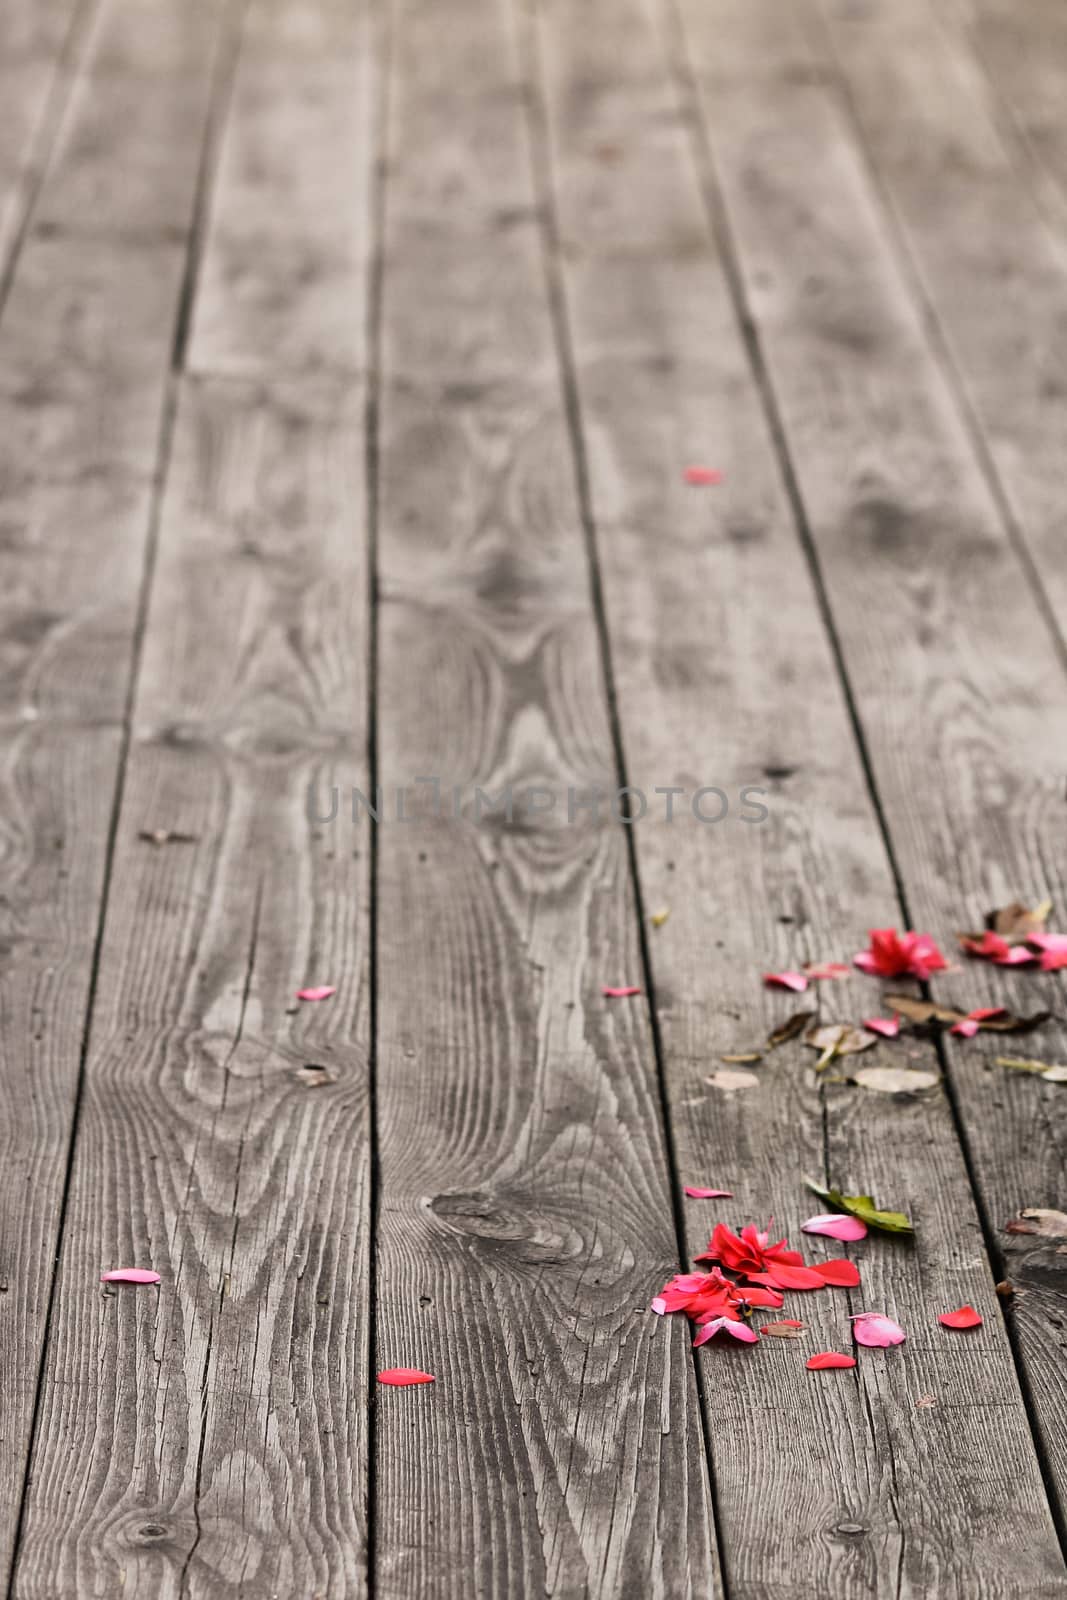 Autumn's fallen flowers on the wooden plank